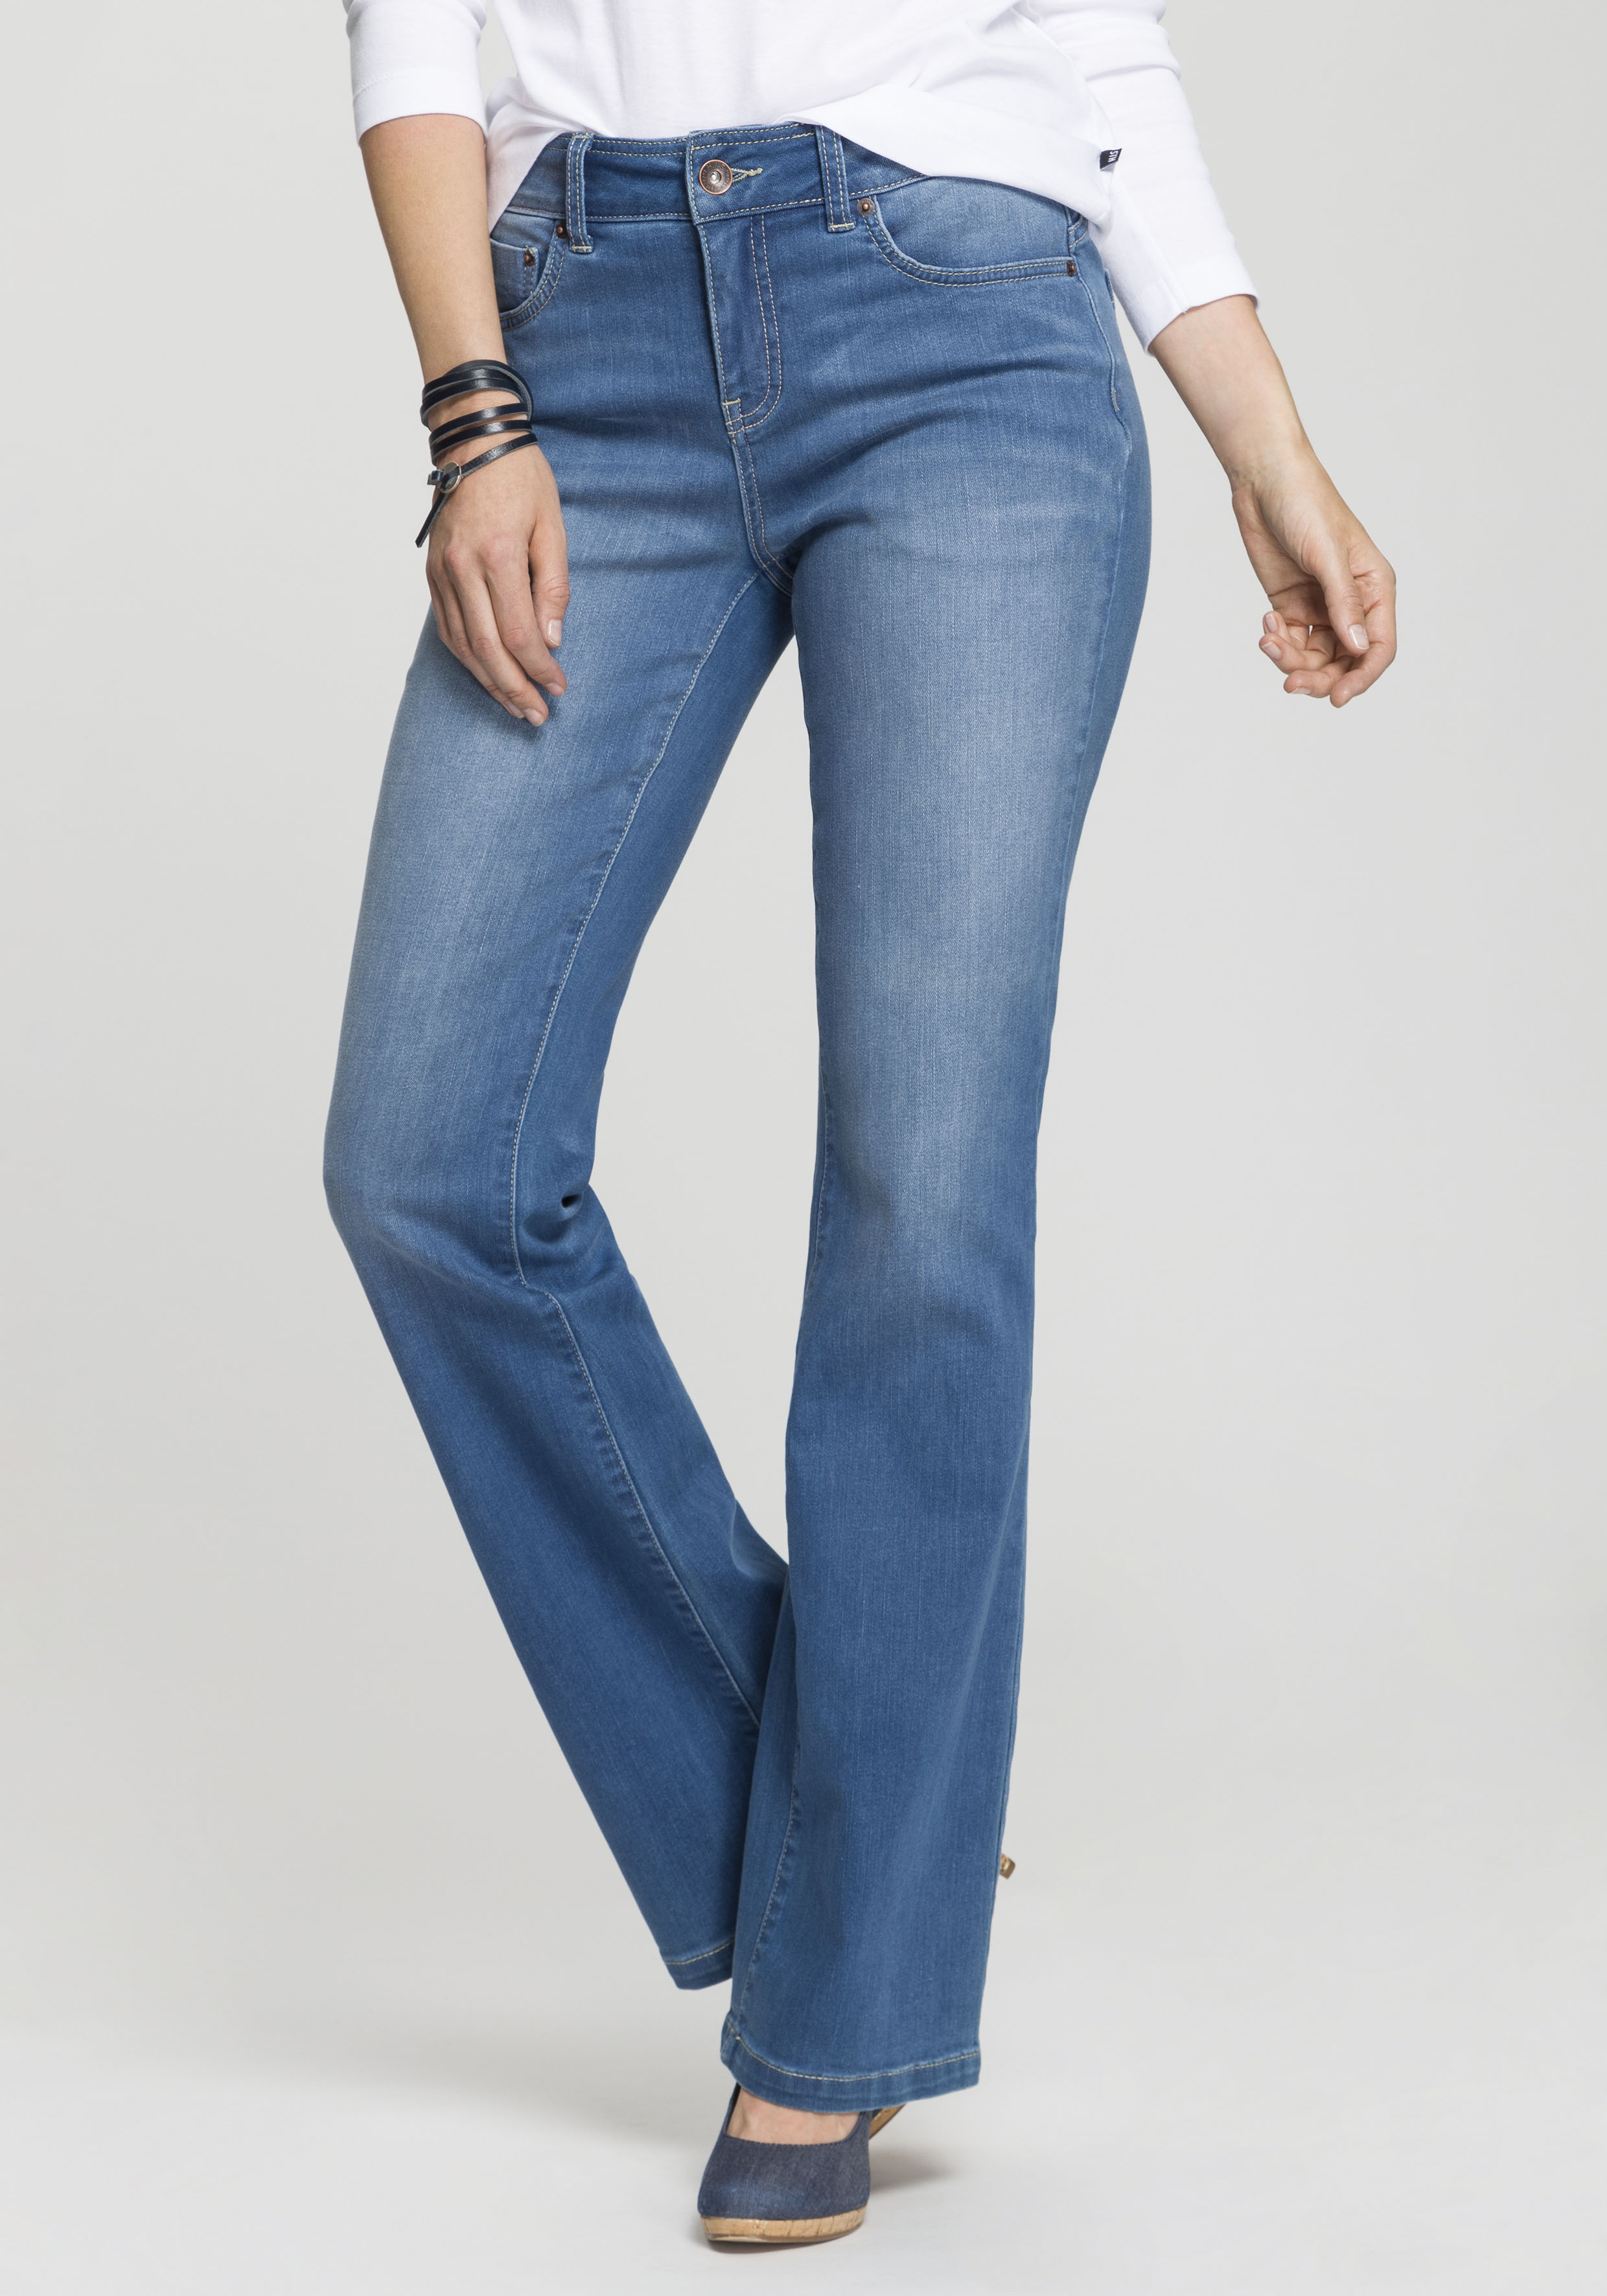 H.I.S Bootcut-Jeans "High-Waist", Nachhaltige, wassersparende Produktion durch OZON WASH